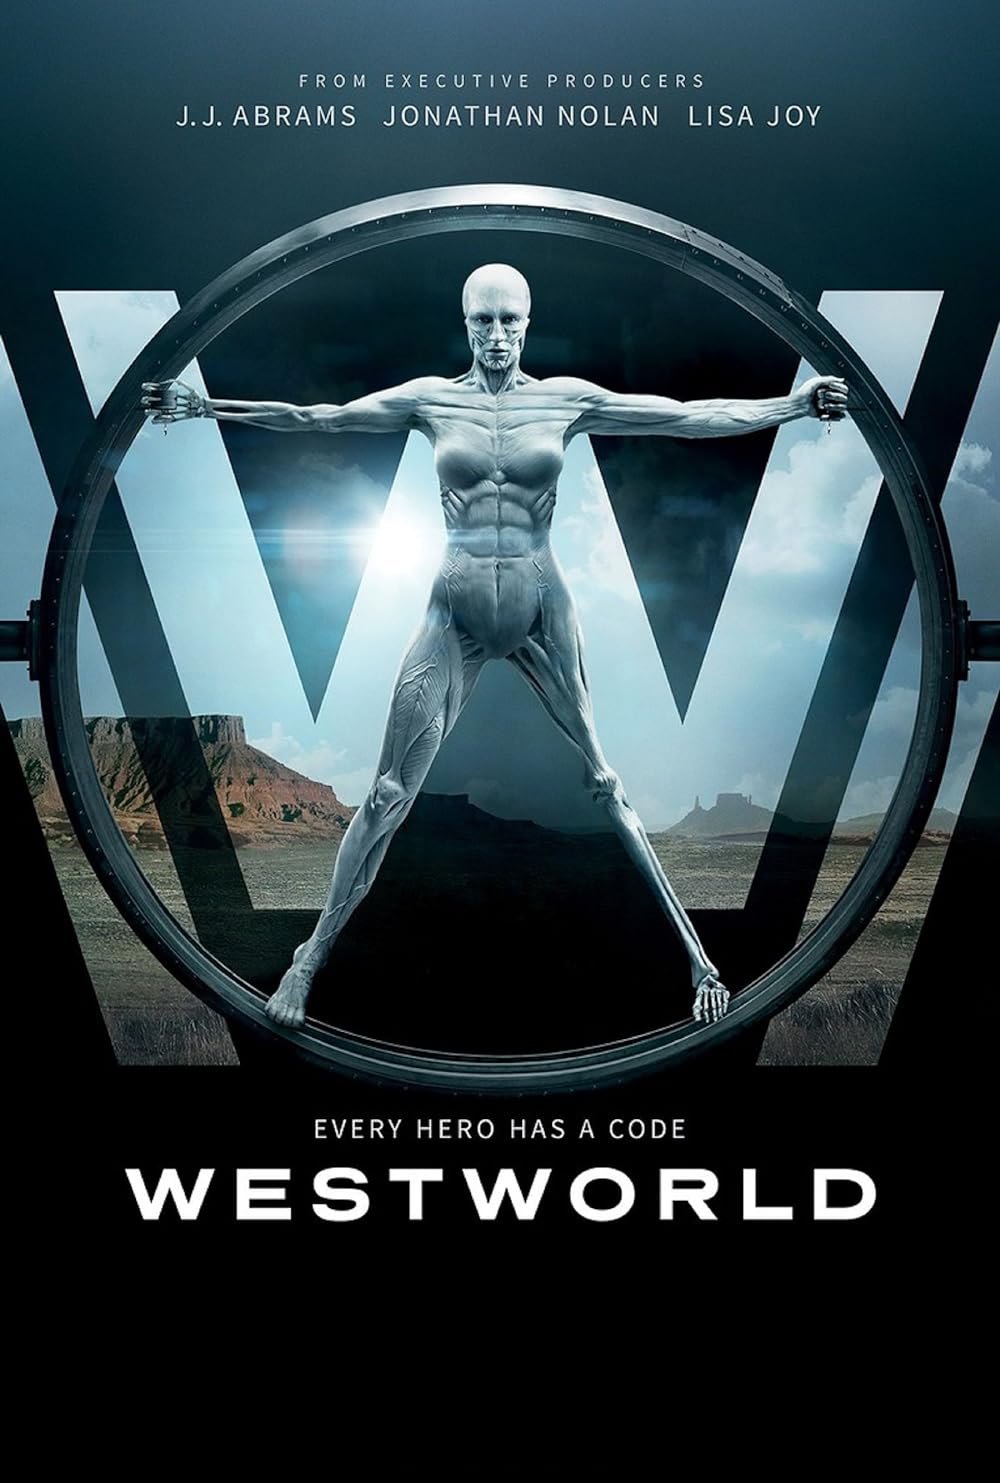 Westworld 2016 S01 192Kbps 23.976Fps 48Khz 2.0Ch DigitalTV Turkish Audio TAC